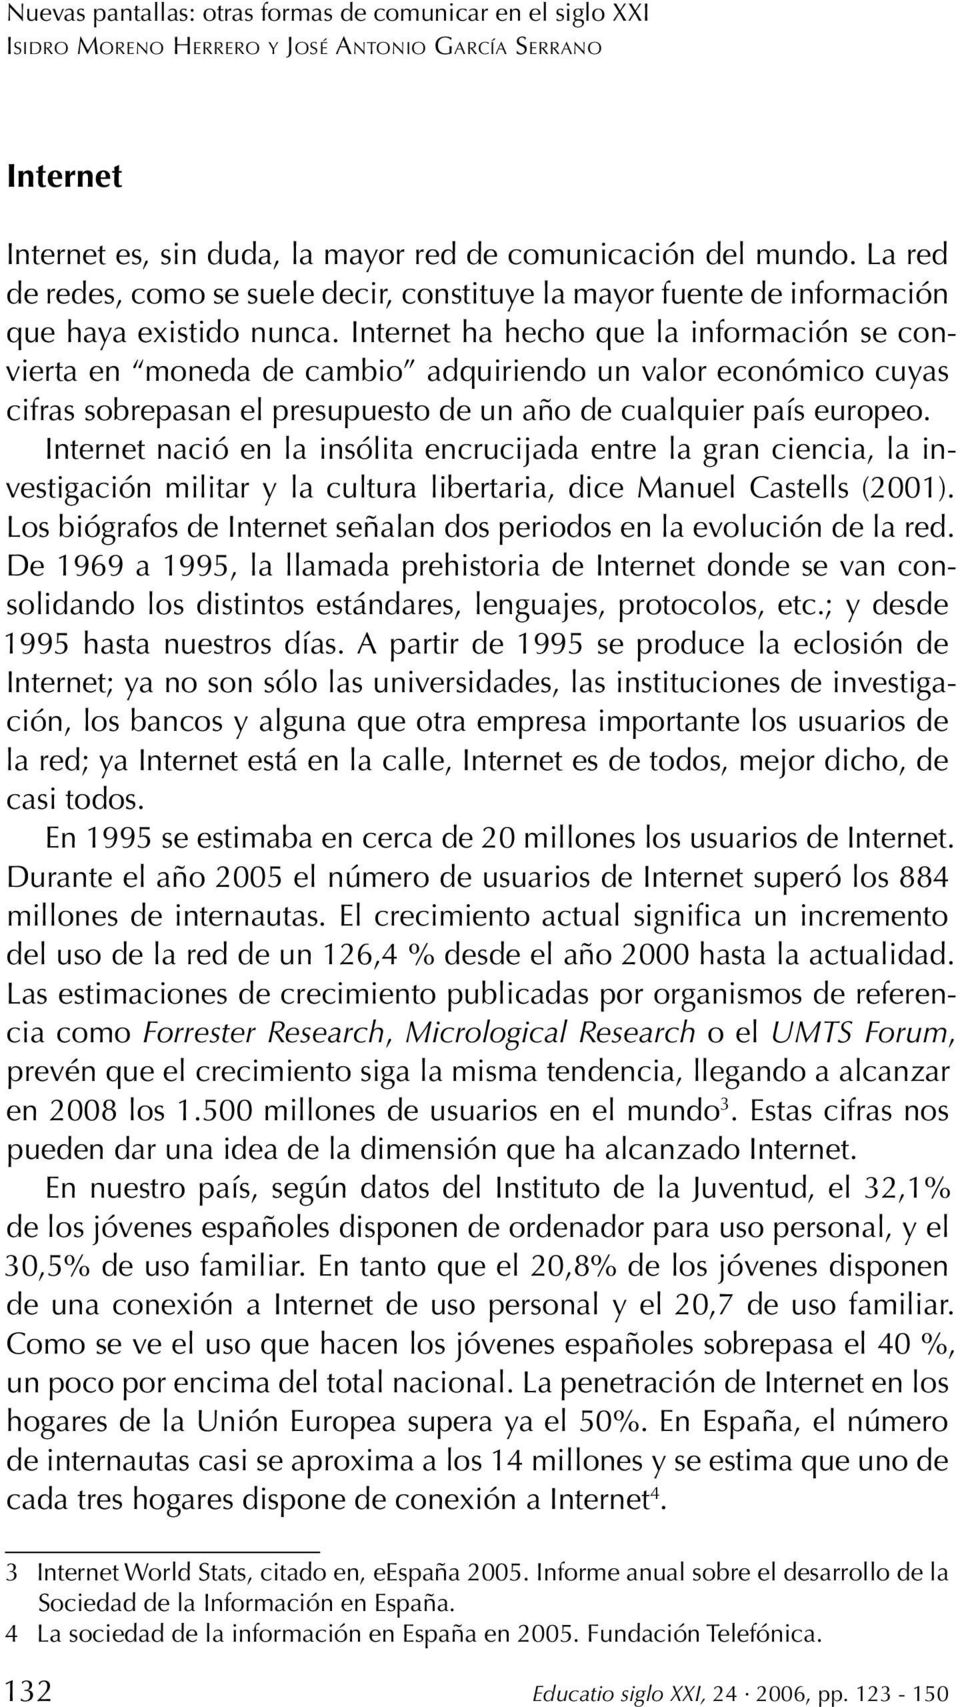 Internet nació en la insólita encrucijada entre la gran ciencia, la investigación militar y la cultura libertaria, dice Manuel Castells (2001).